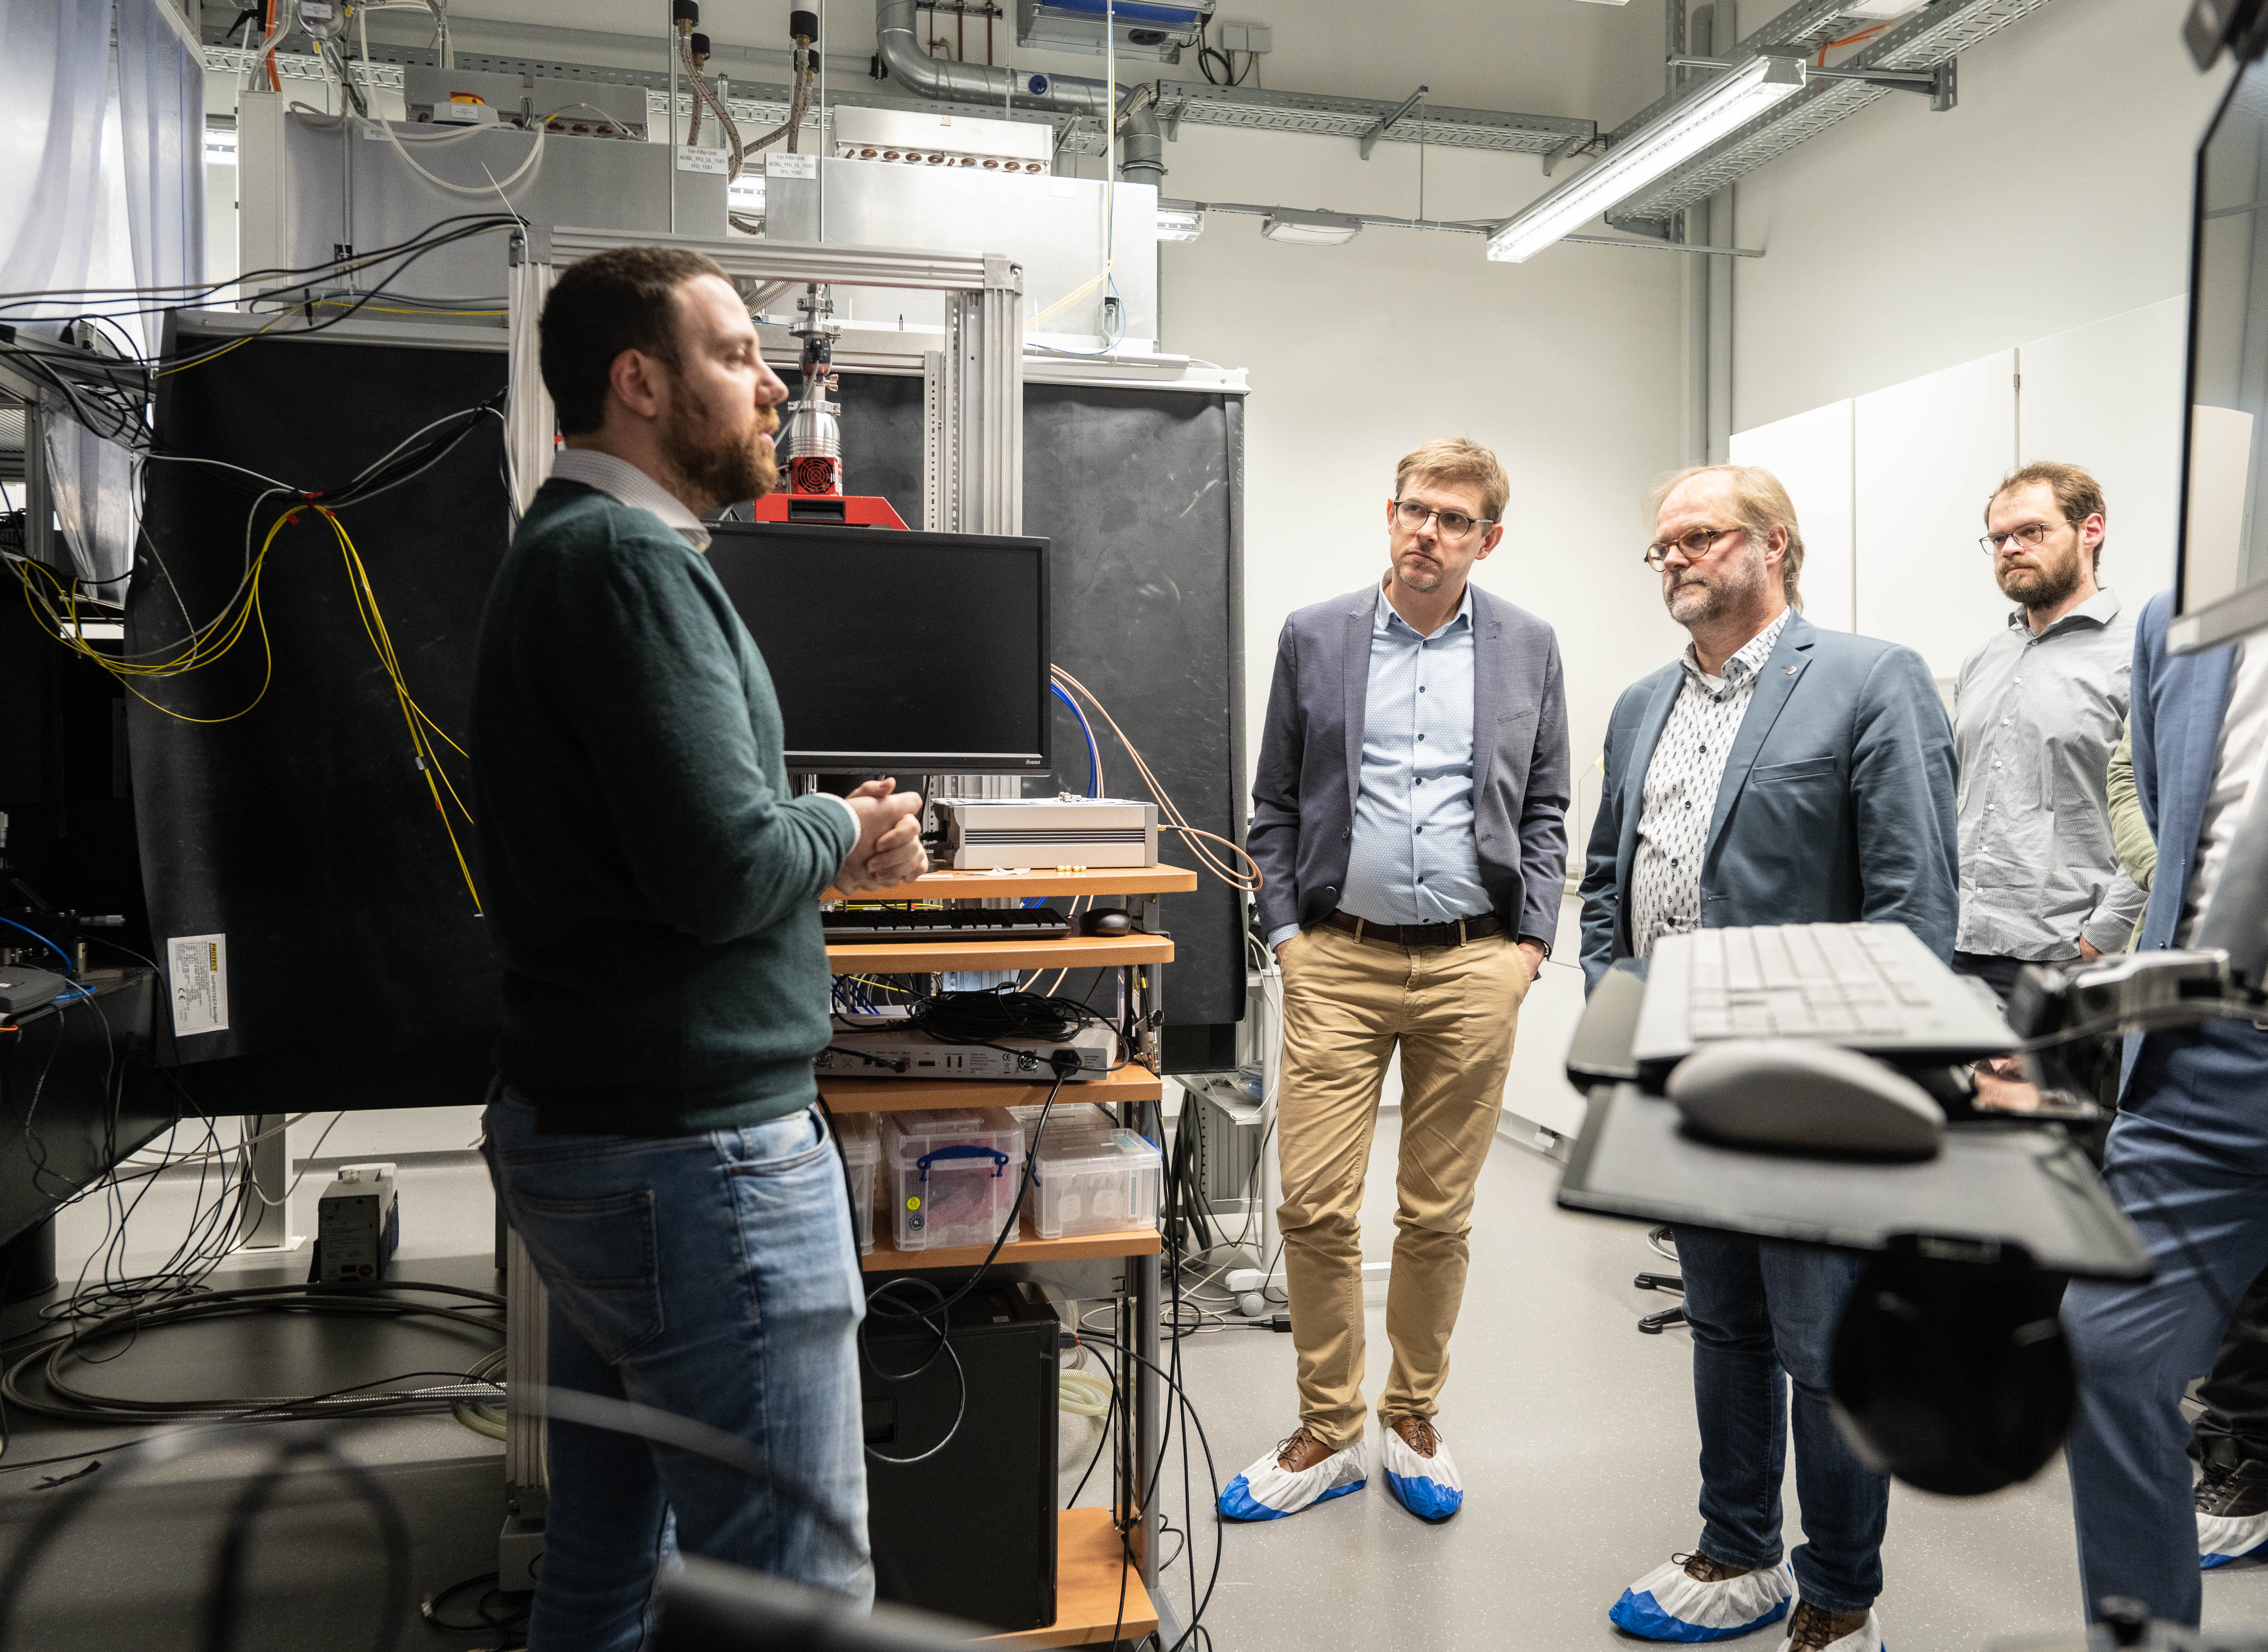 Die Delegation rund um EU-Abgeordnete besuchte gemeinsam mit Andreas Tünnermann die Labore zur abhörsicheren Quantenkommunikation des Fraunhofer IOF in Jena.